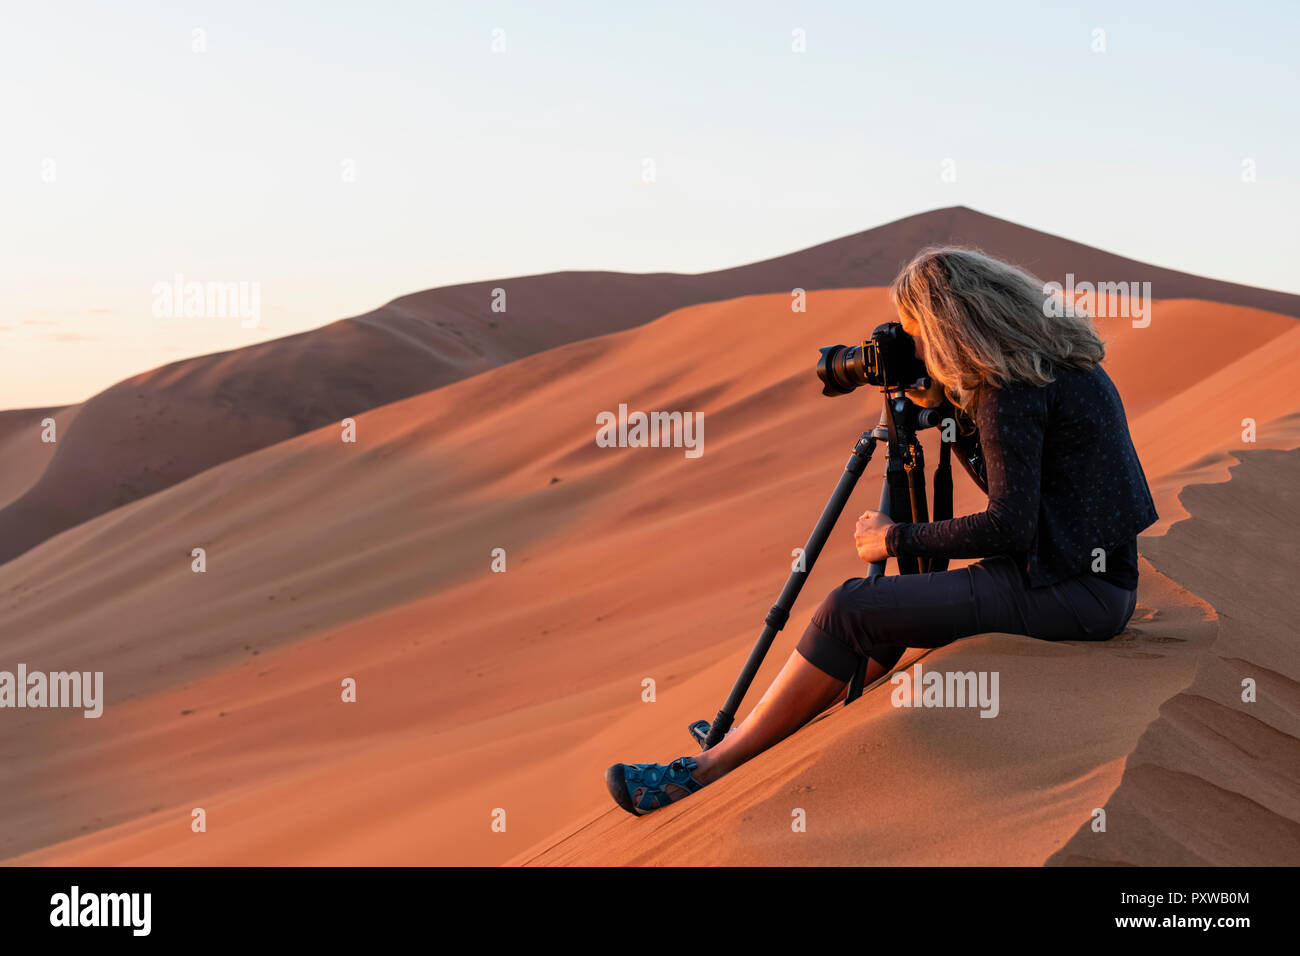 Afrika, Namibia, Namib, Naukluft National Park, weiblichen photograper am frühen Morgen Licht fotografieren, sitzen auf Sand dune Stockfoto